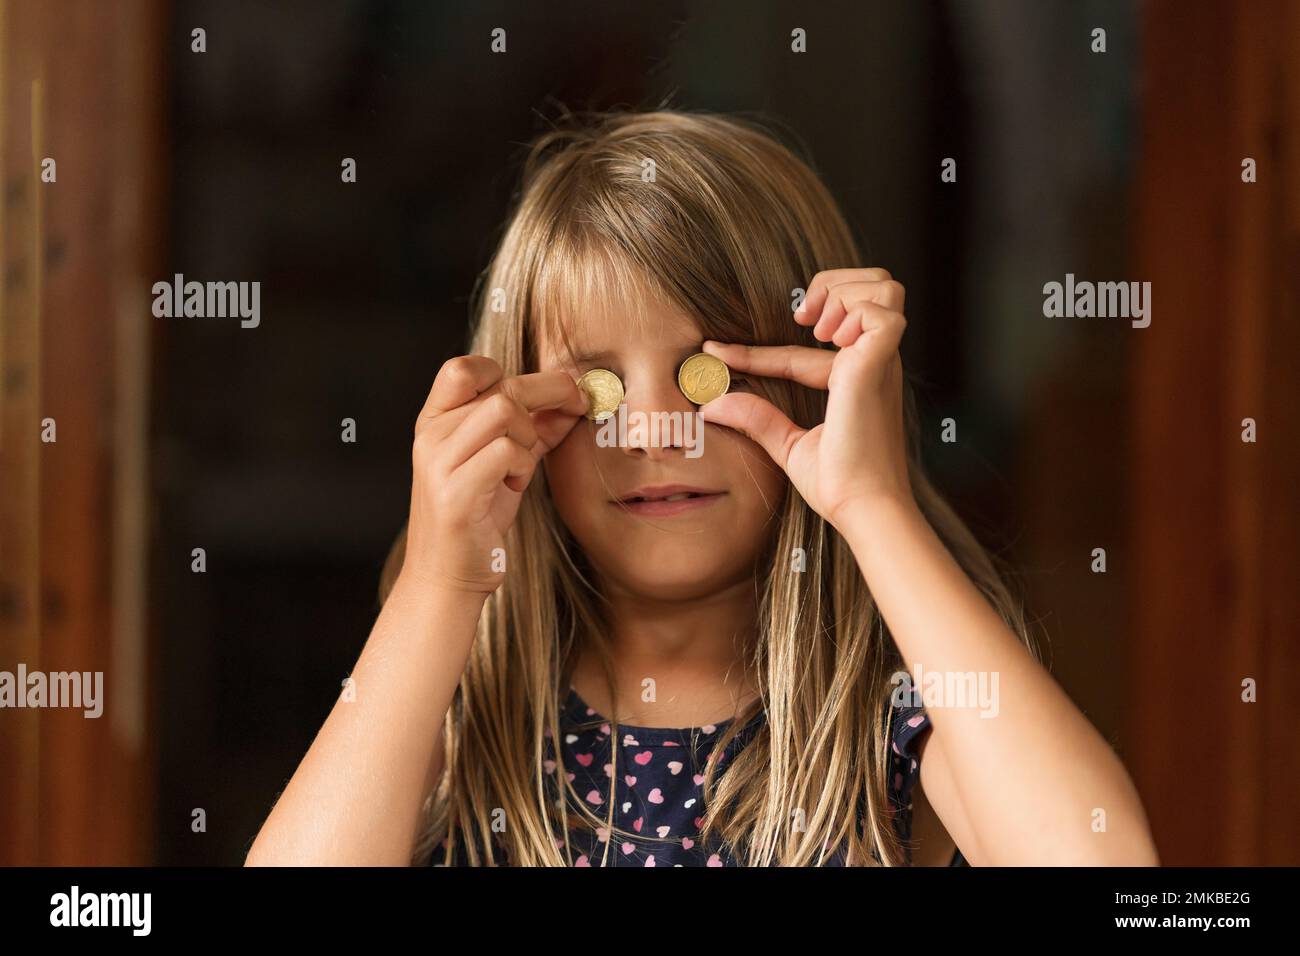 Giovane ragazza sorridente che tiene monete da 20 cent al posto dei suoi occhi. Foto Stock